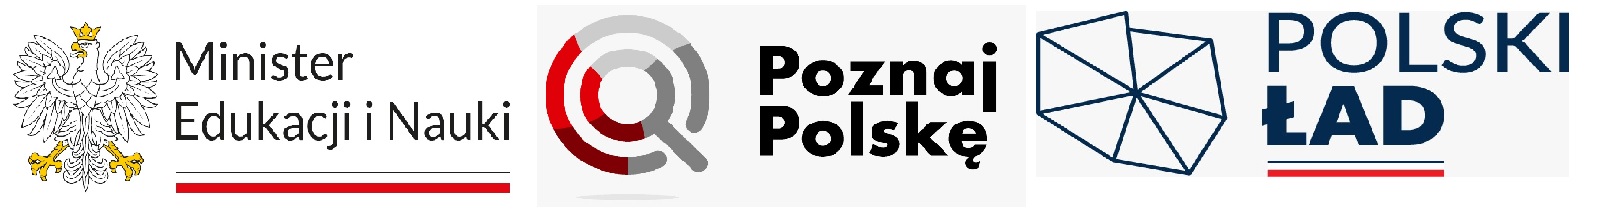 mein i poznaj polske